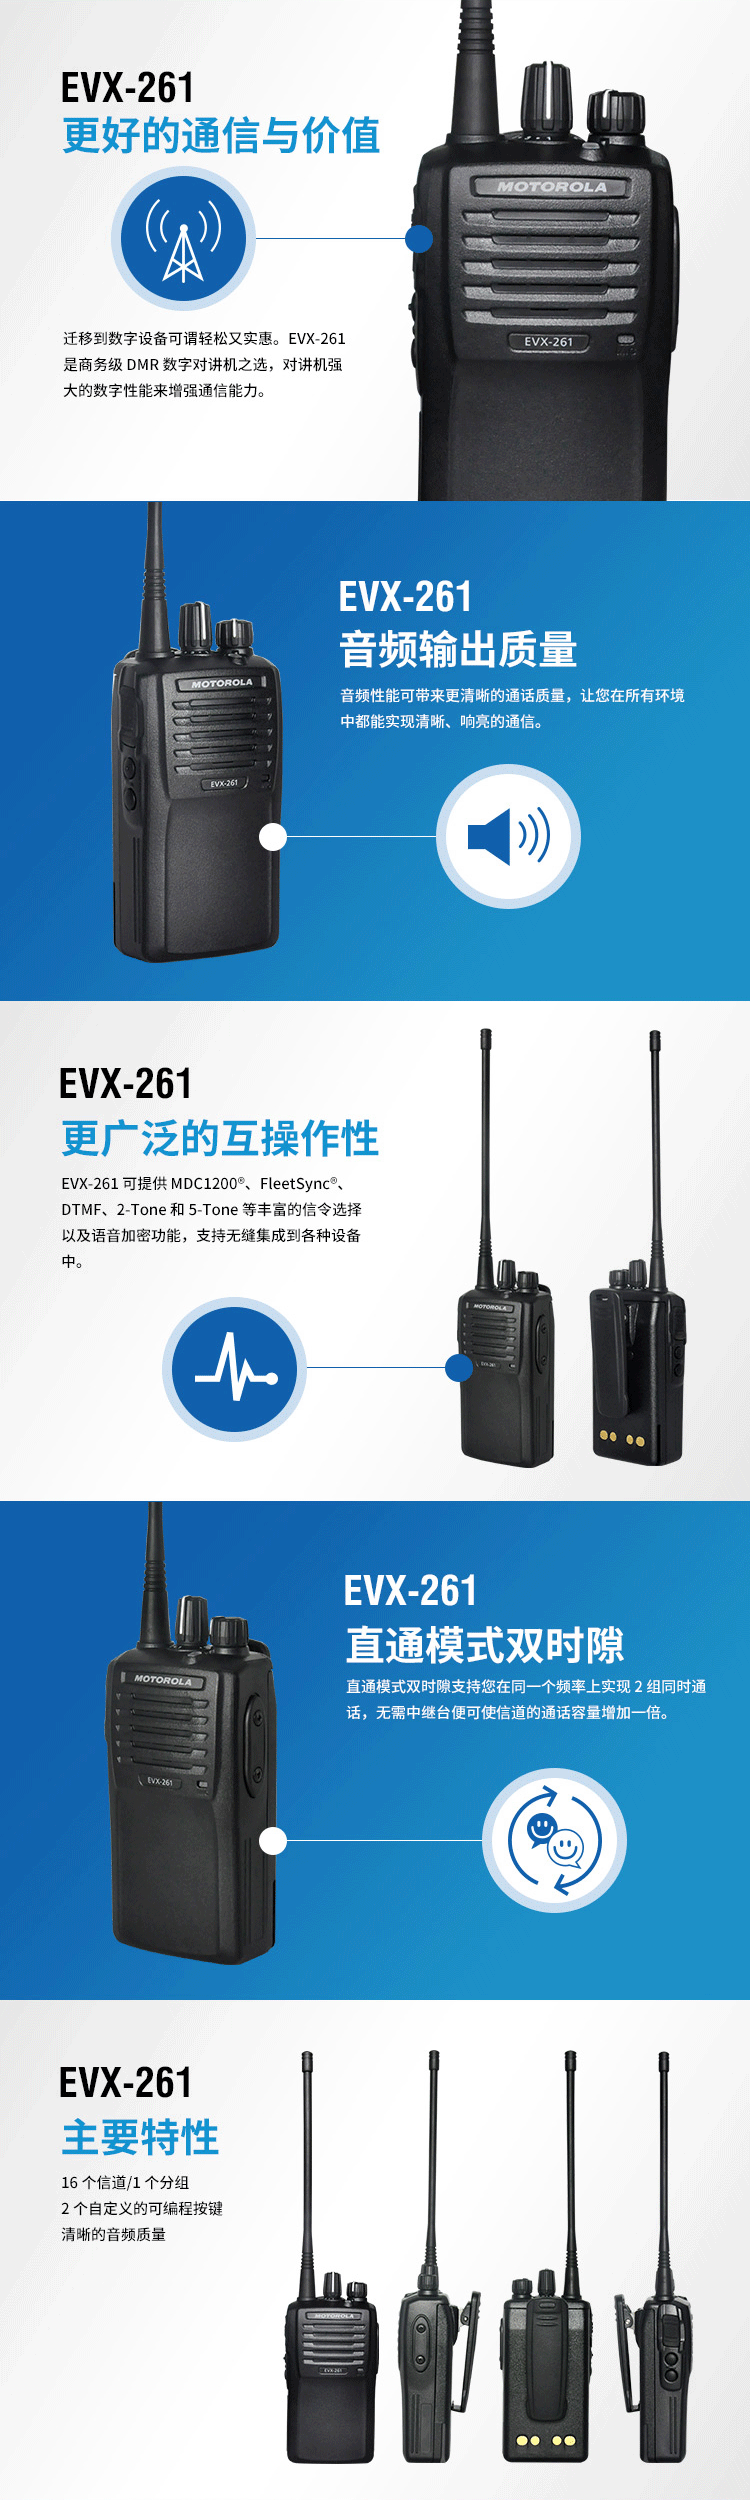 EVX-261便携式数字对讲机